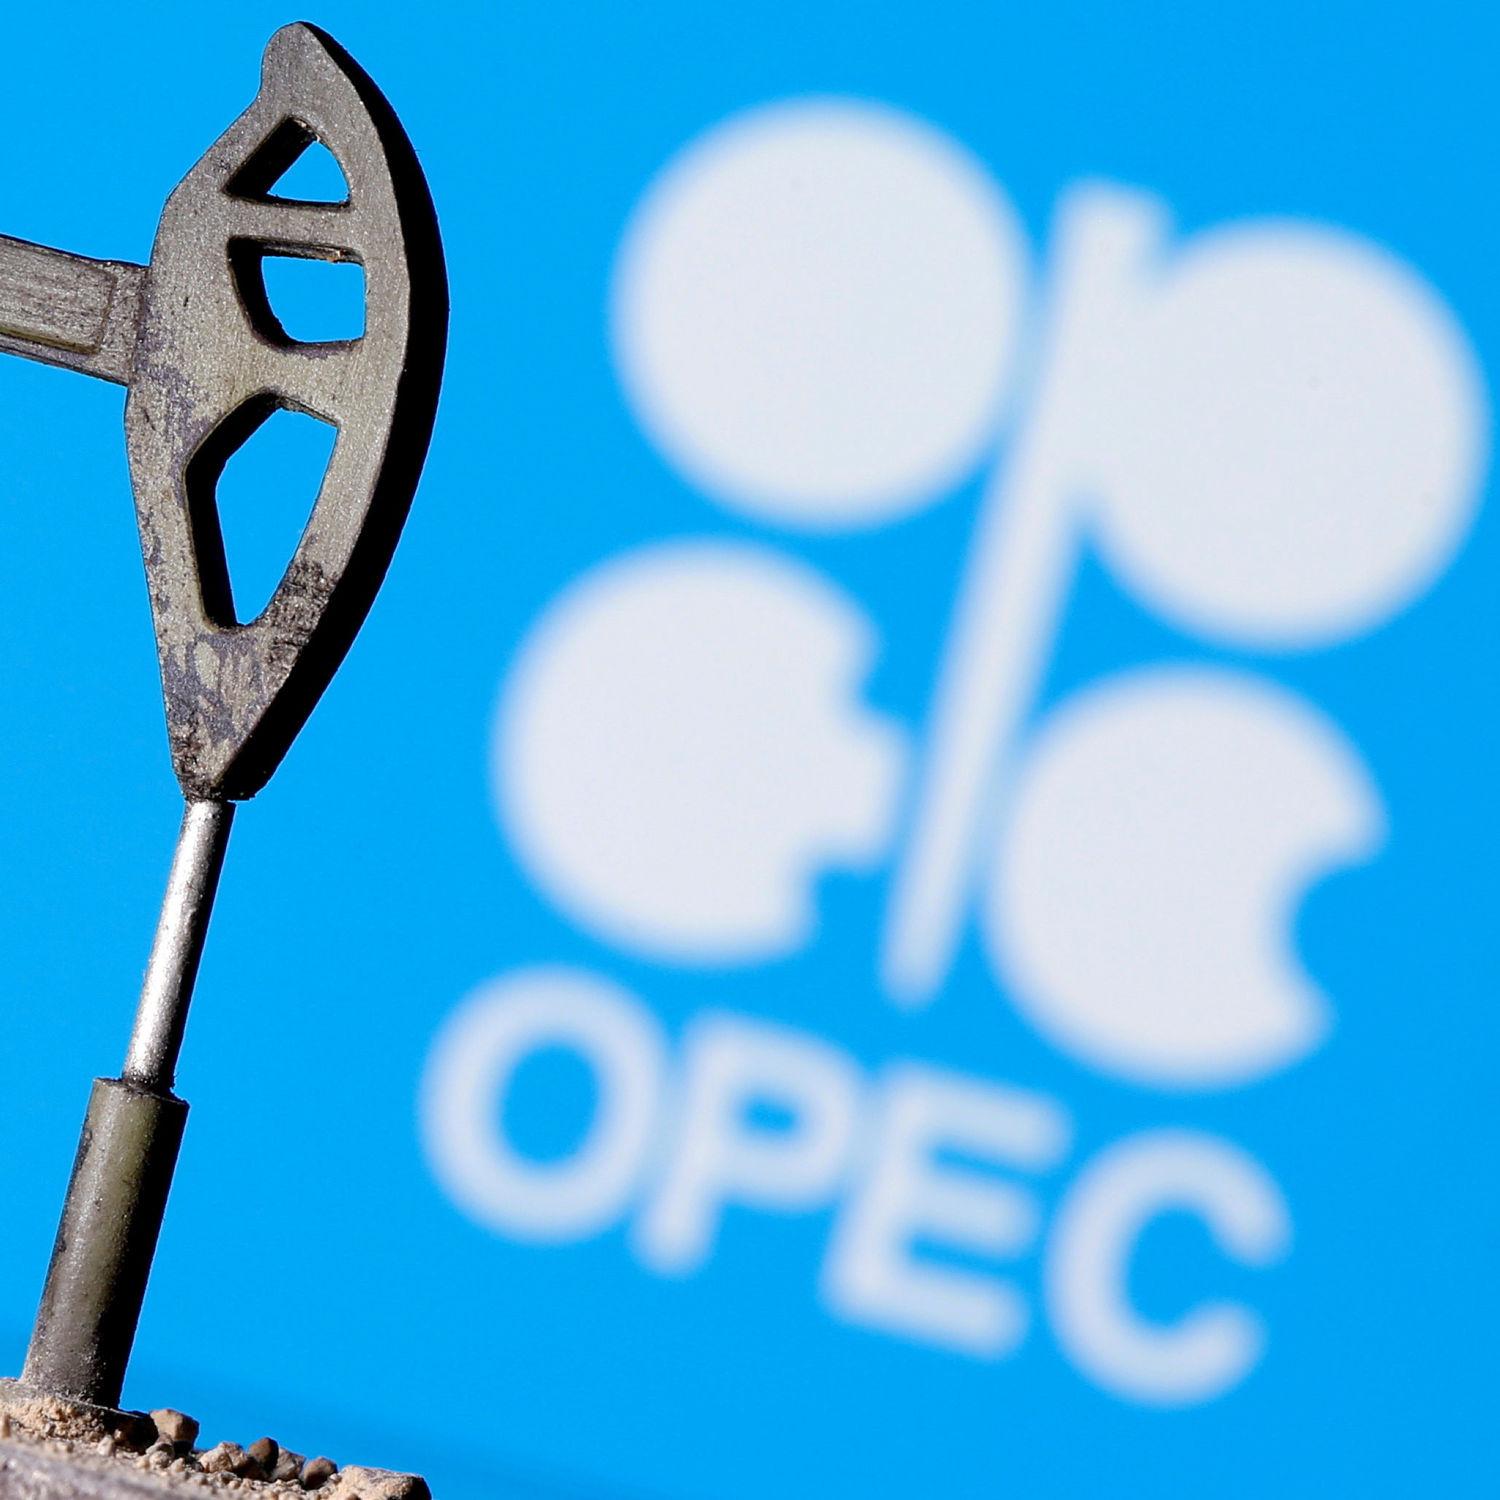 Oil advances towards $70 as OPEC prepares to set output